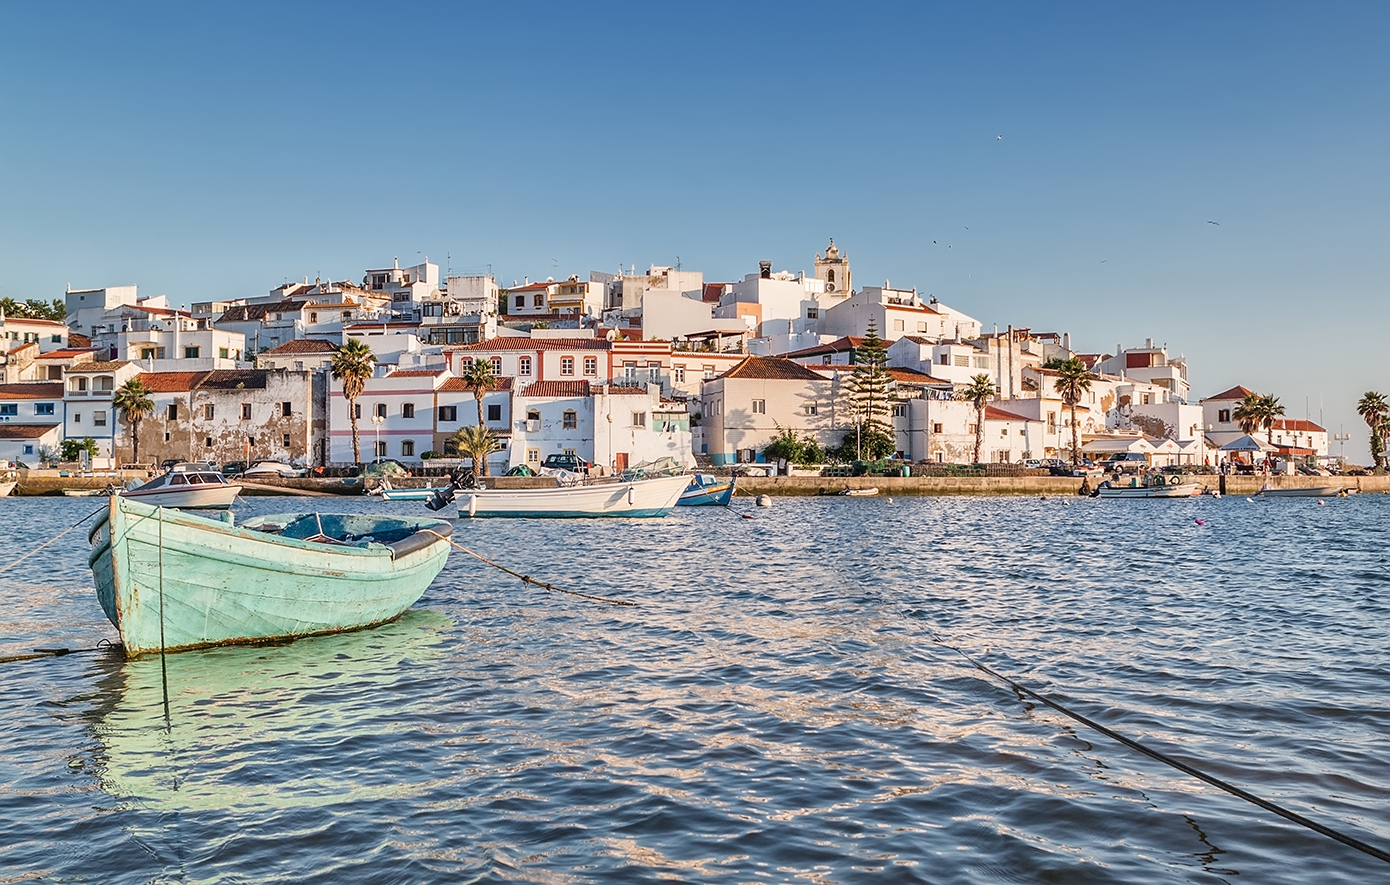 Το χωριό στην Πορτογαλία που θυμίζει τα δικά μας κυκλαδονήσια